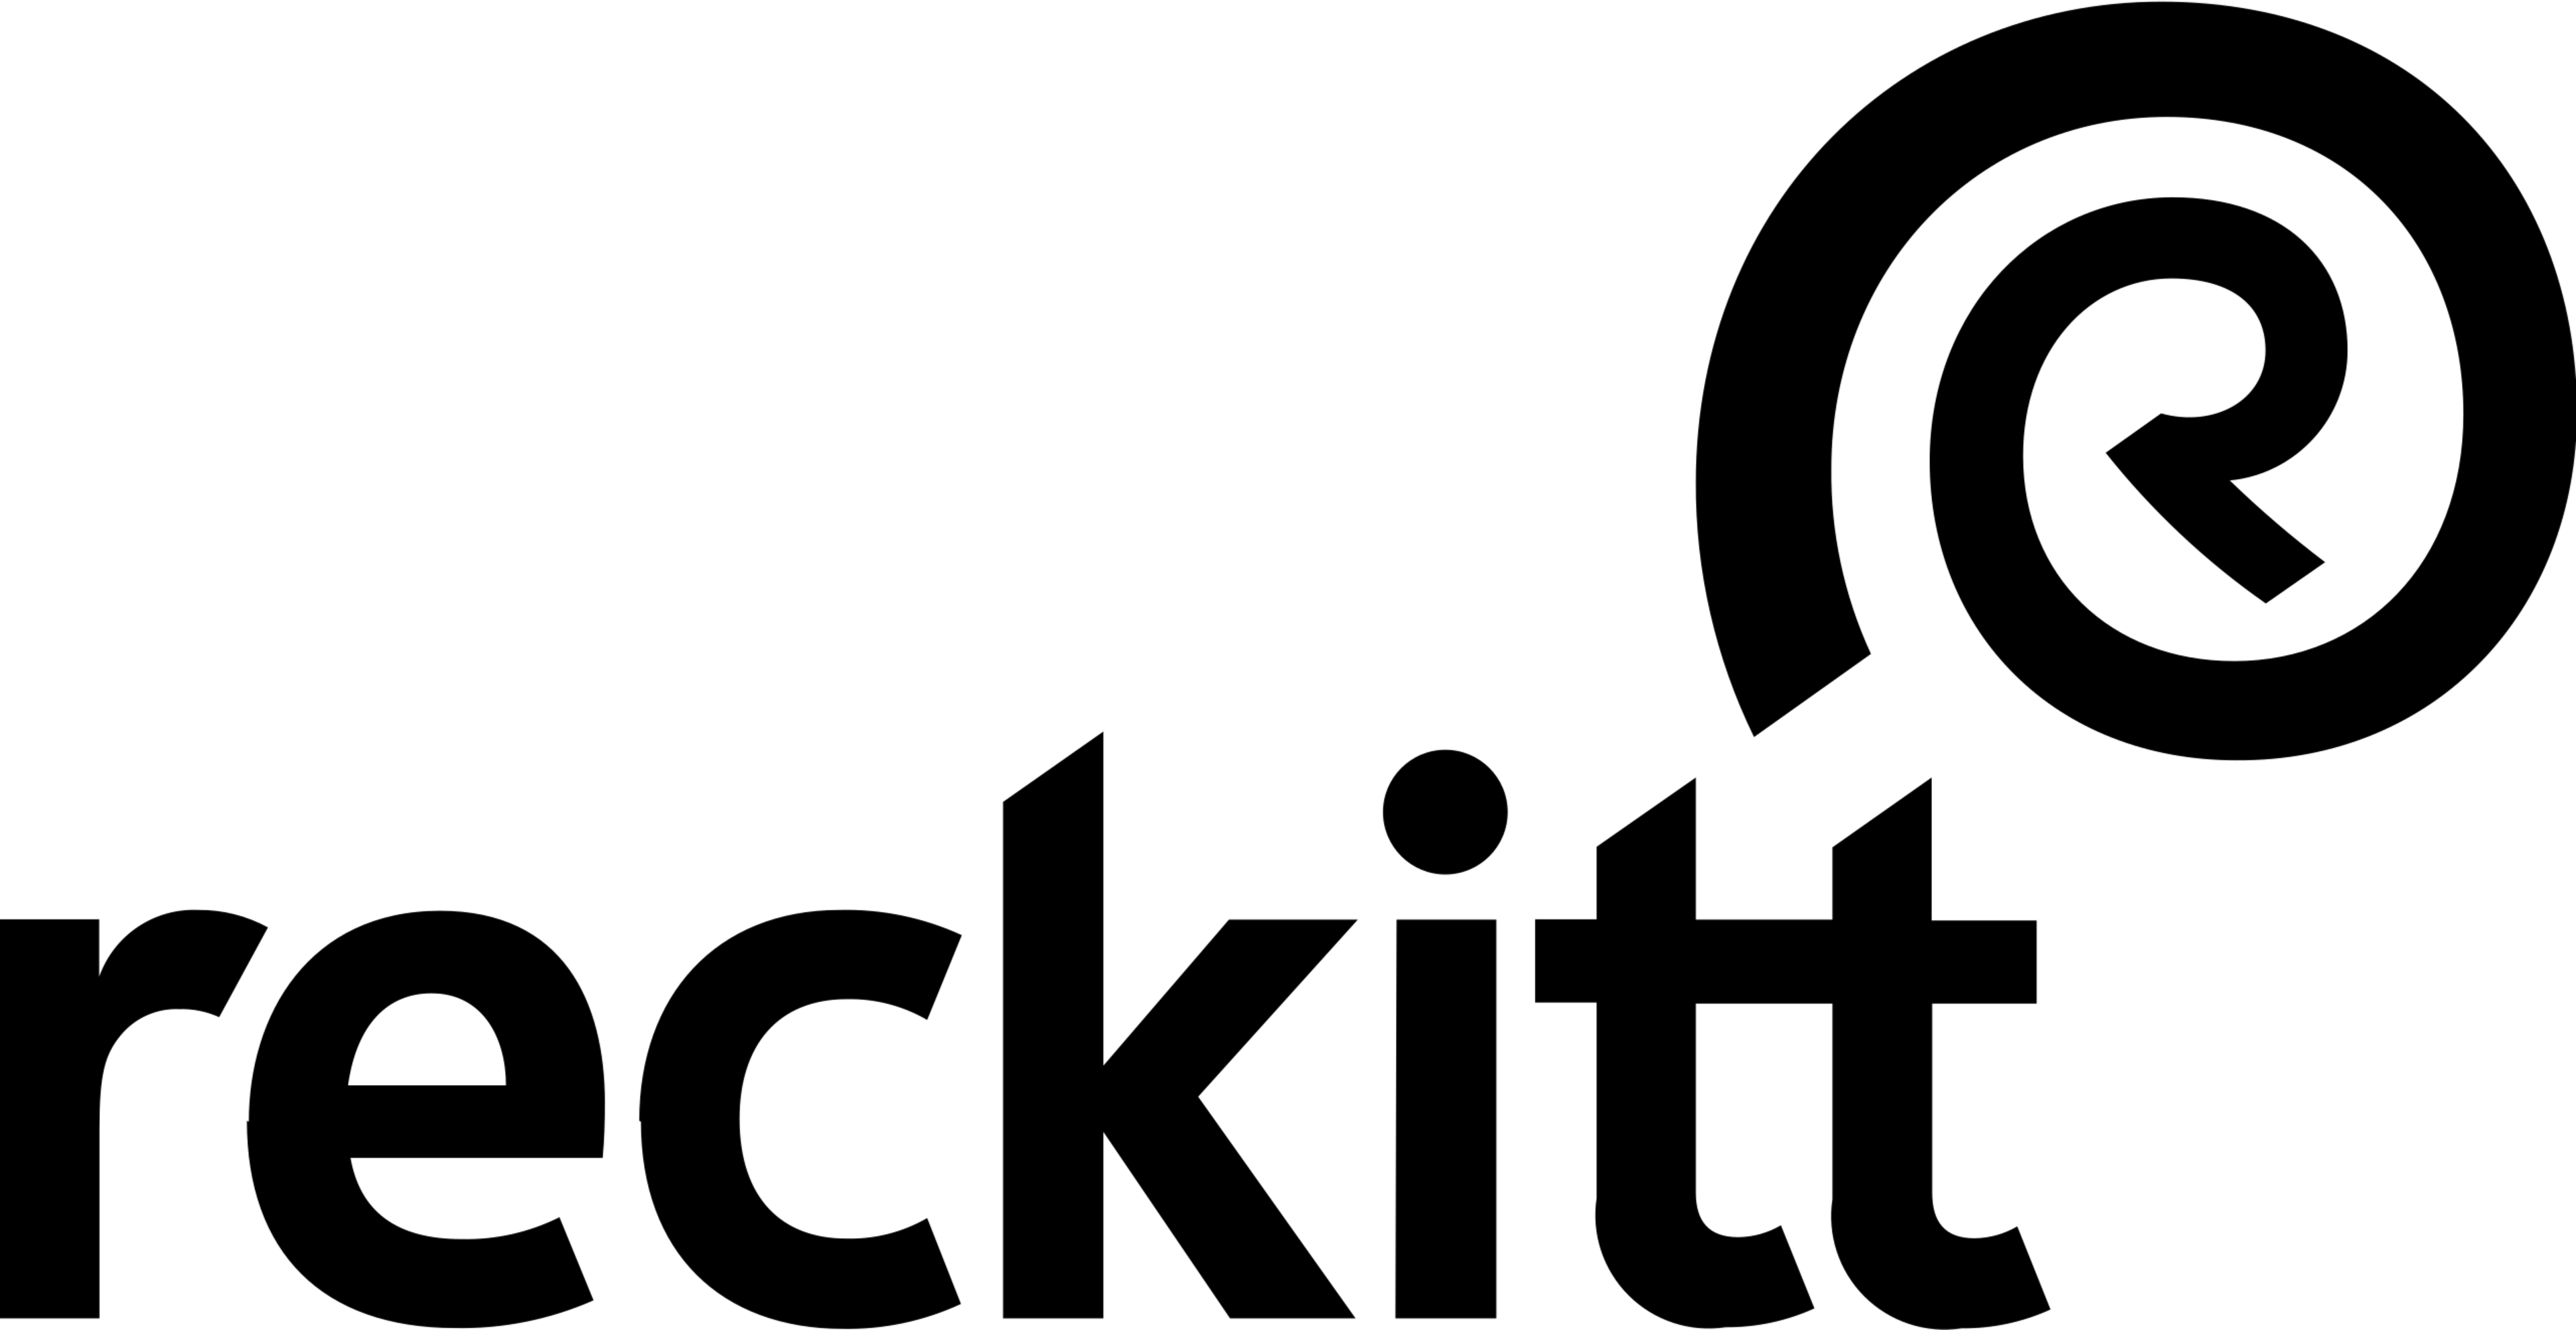 The logo for Reckitt.